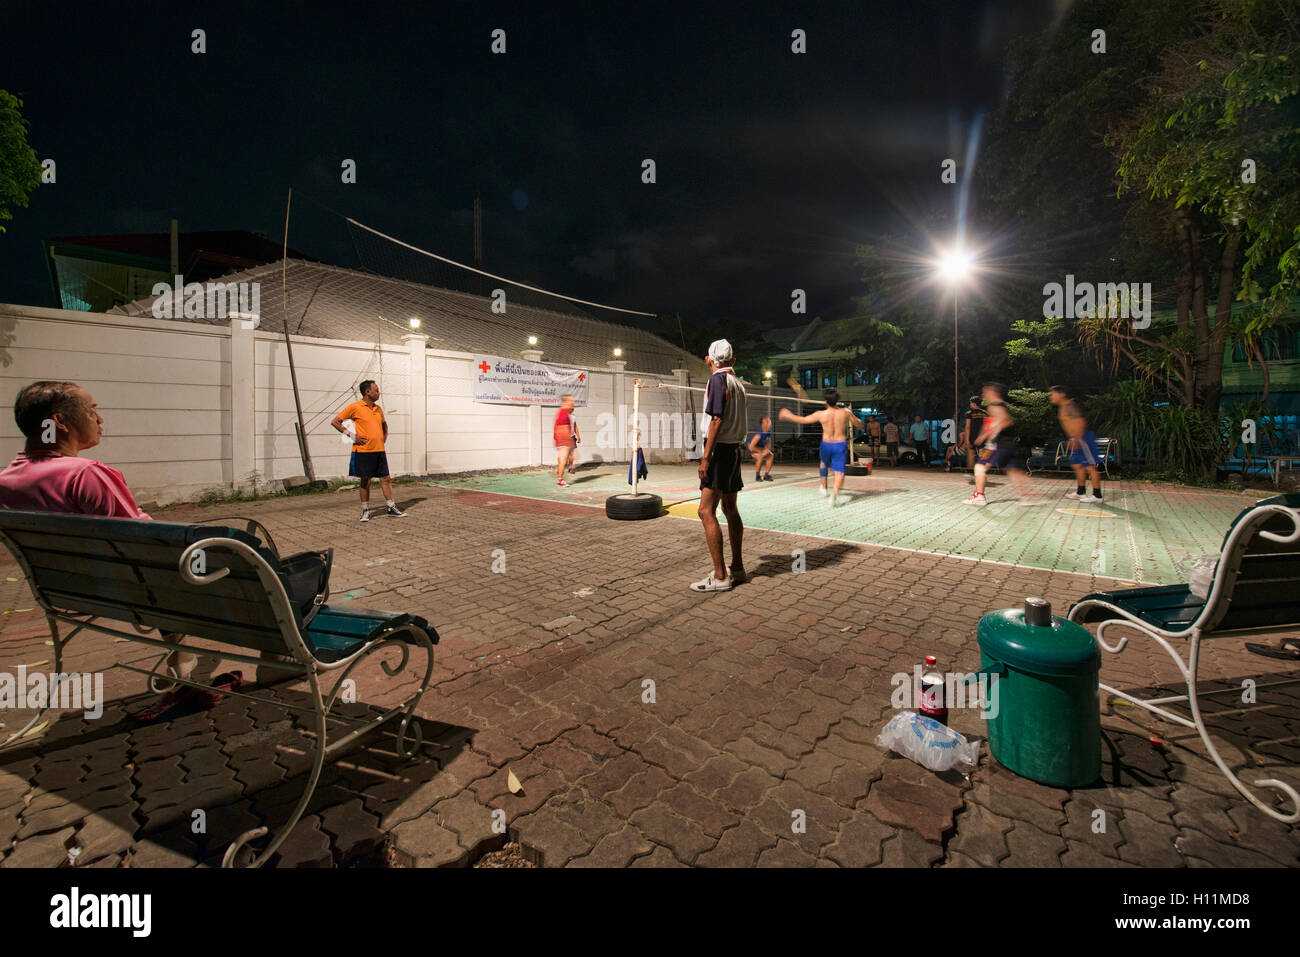 Playing sepak takraw in Bangkok, Thailand Stock Photo